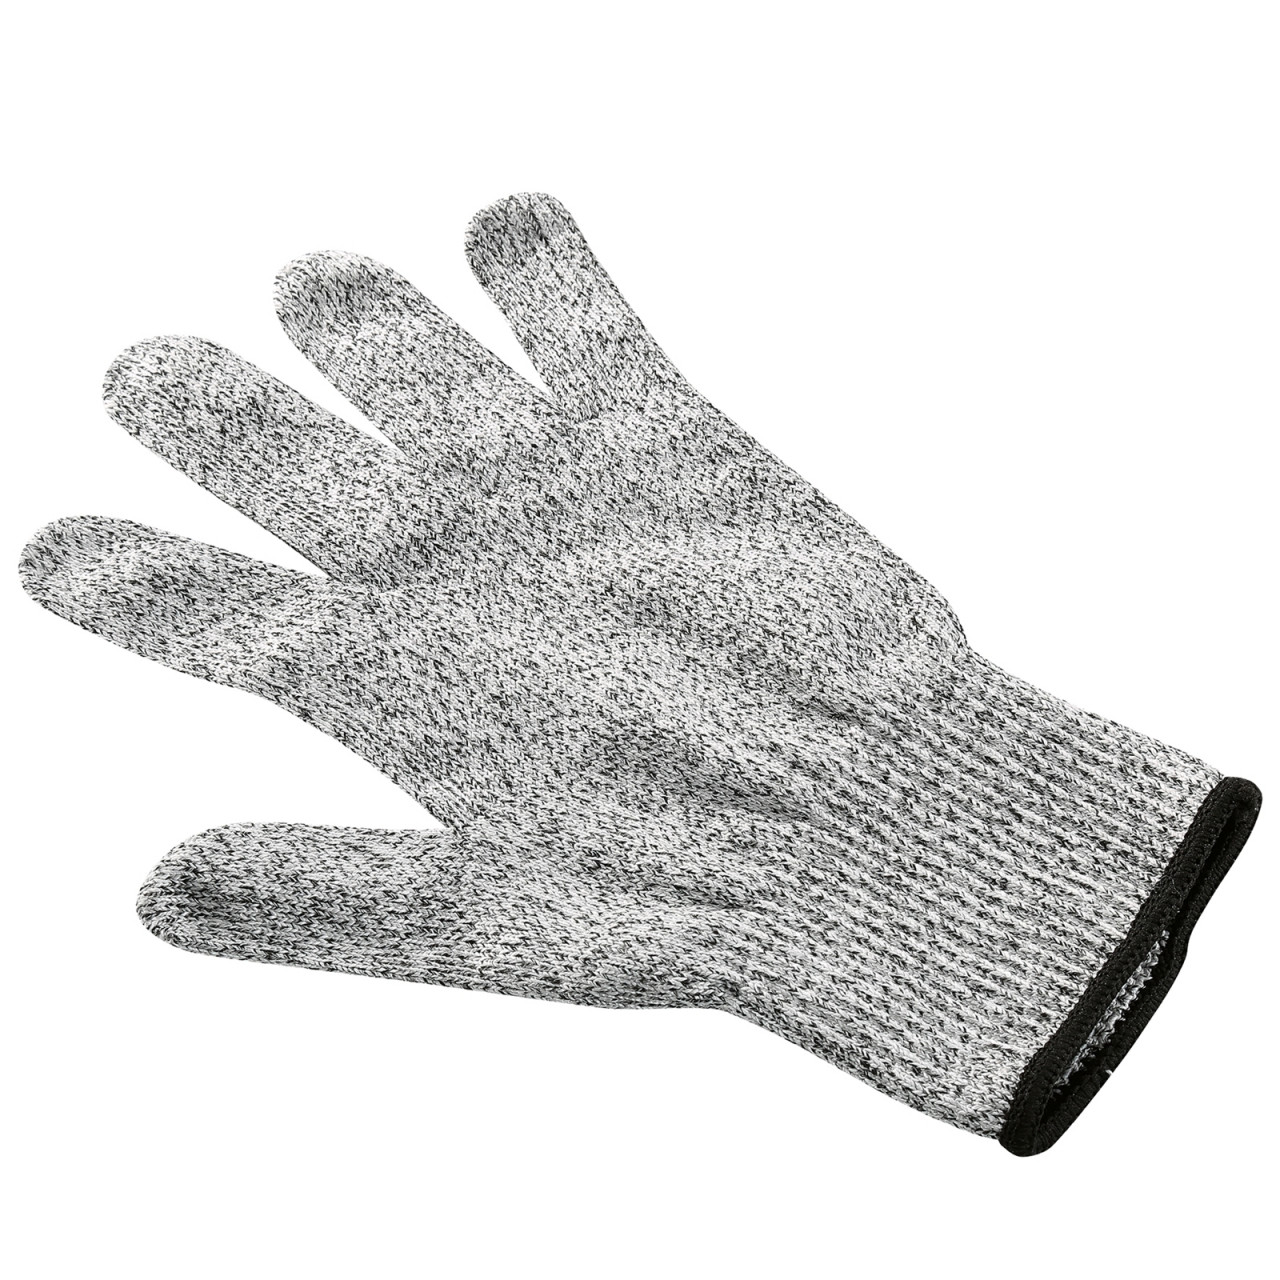 Küchenprofi Schnittschutz Handschuh Safety